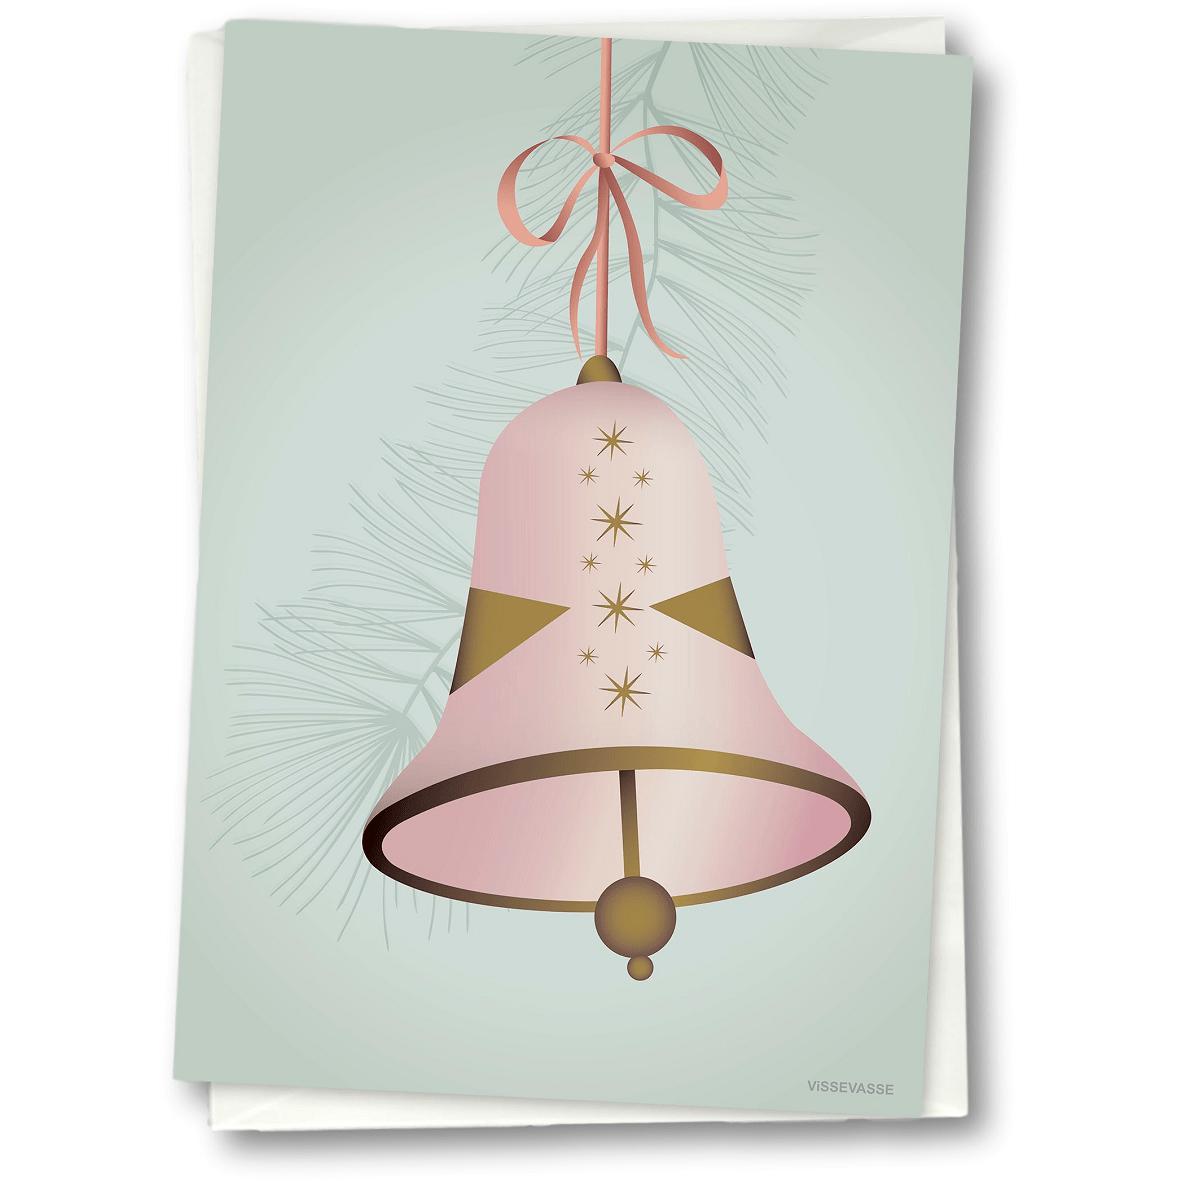 Vissevasse Kerstbell groetkaart 15 x21 cm, roze